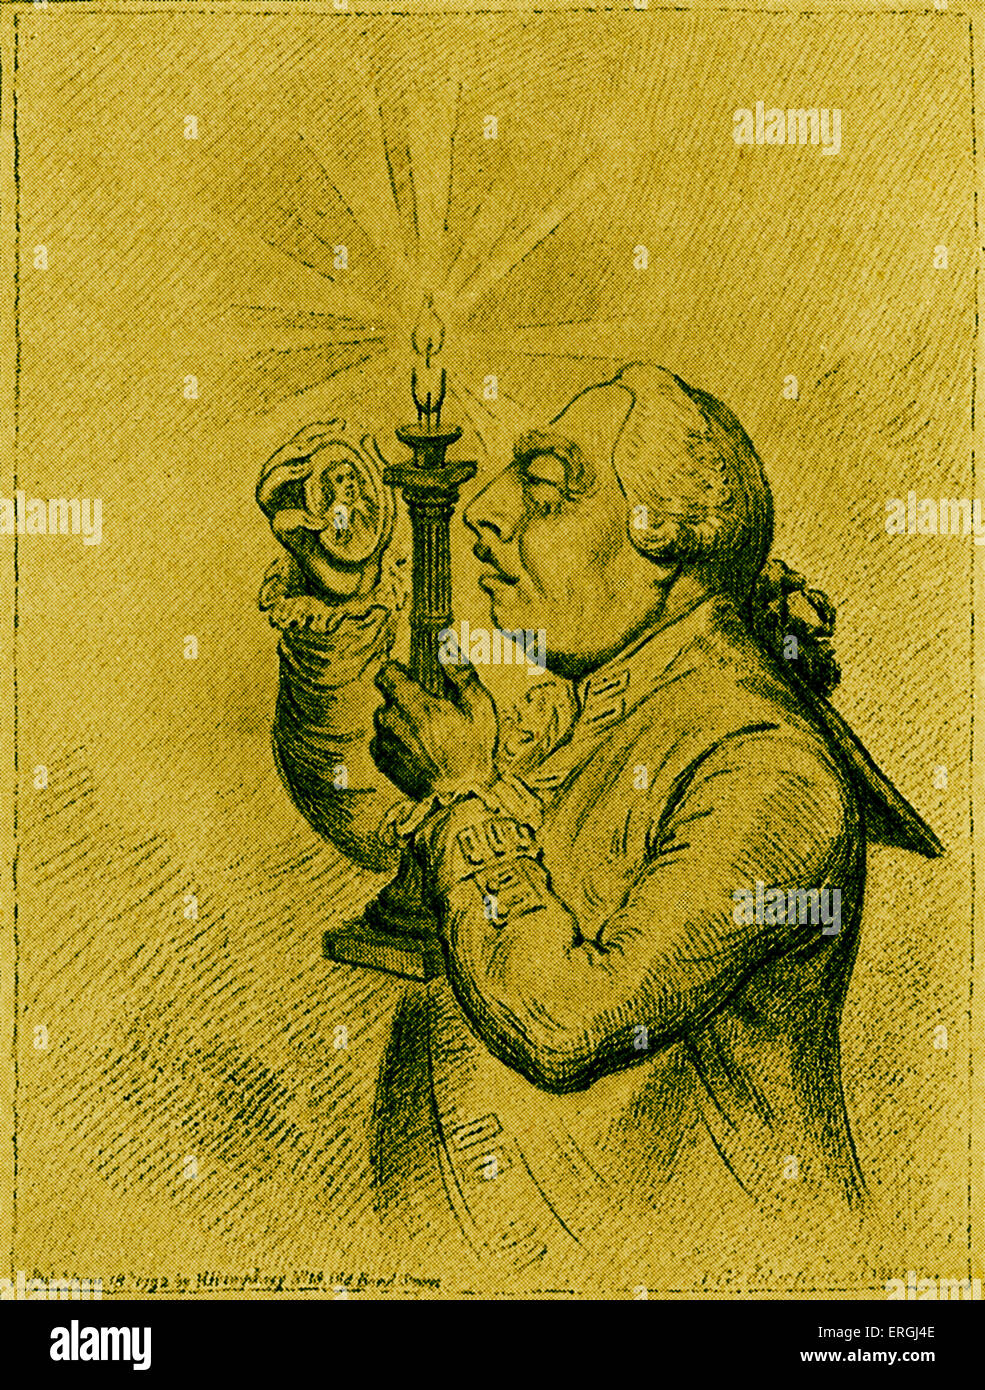 George III Karikatur von James Gillray. George III Prüfung eine Miniatur der republikanischen Führer Oliver Cromwell. Satire auf Stockfoto